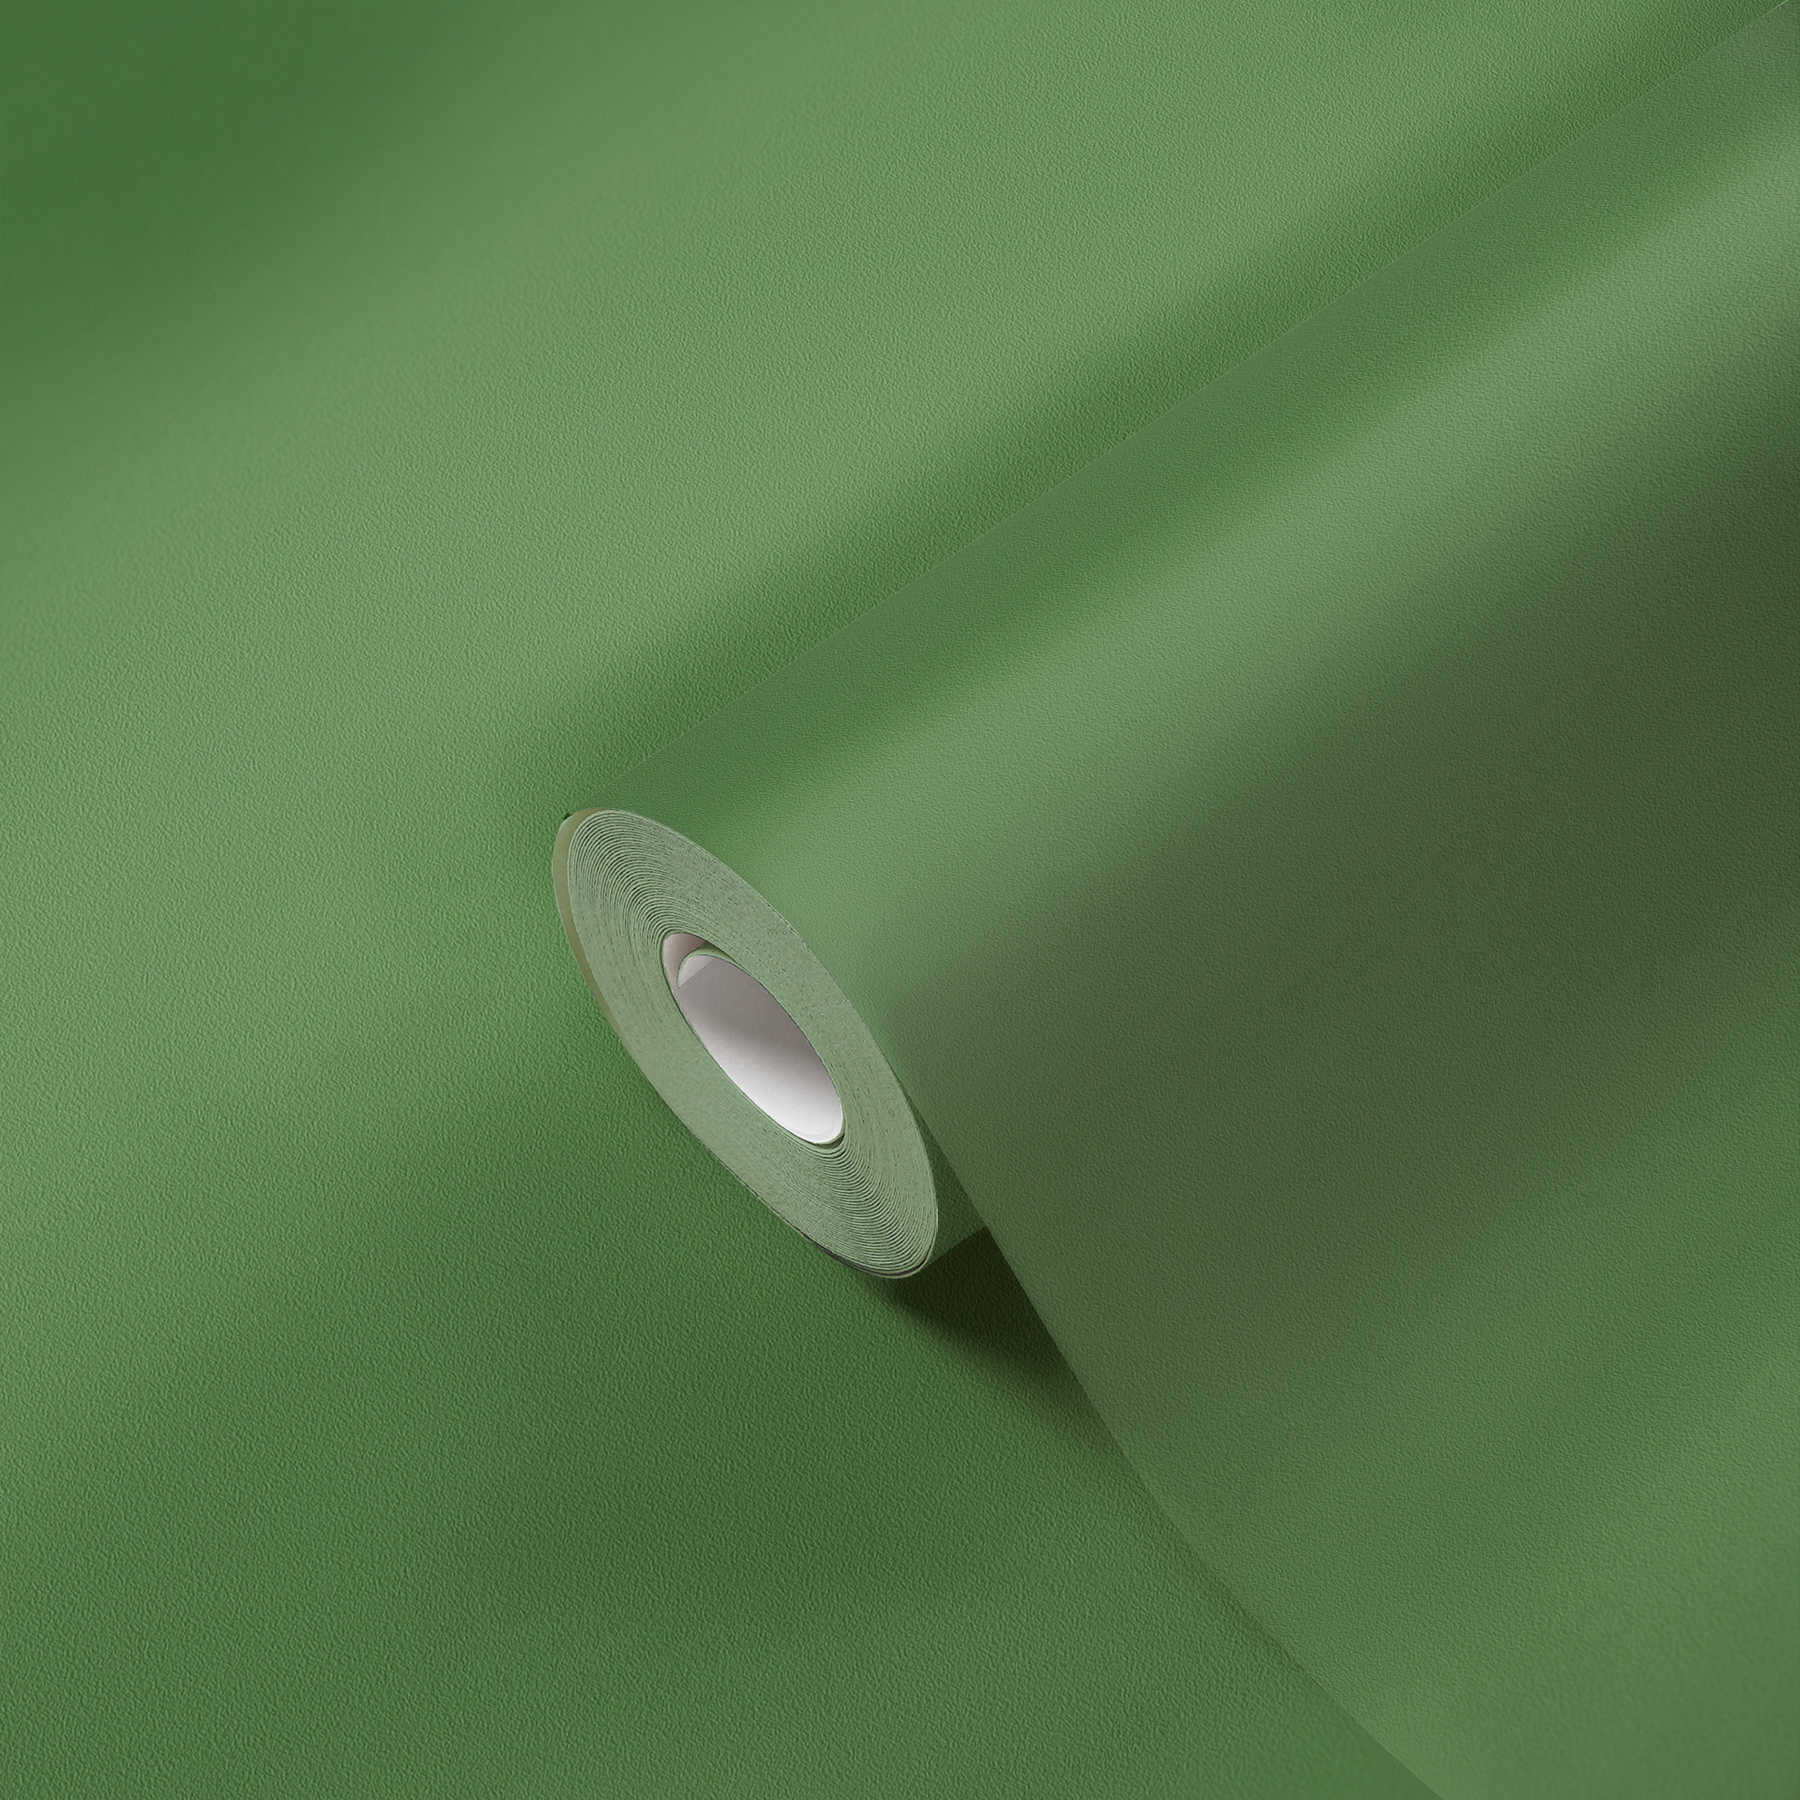             Premium Tapete einfarbig & matt – Grün
        